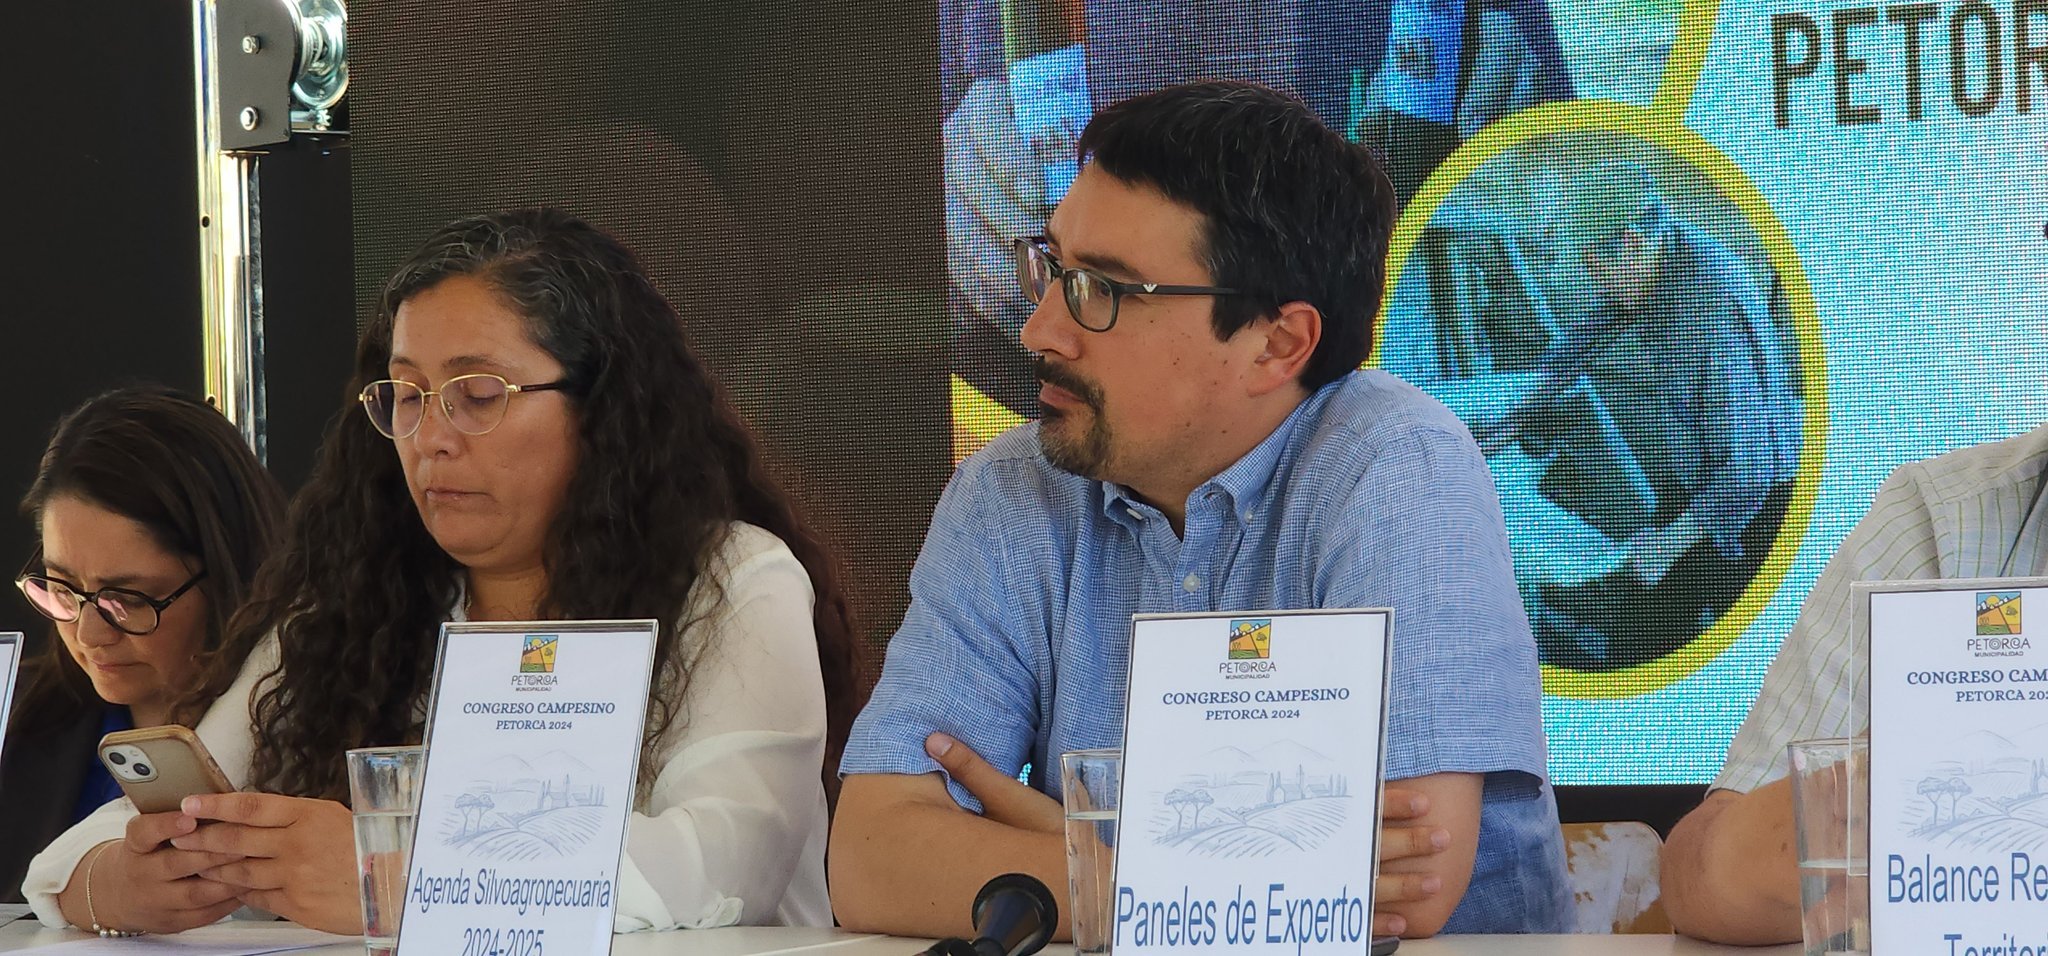 Senador Latorre tras Primer Congreso Campesino en Petorca: «Priorizar una agenda de fomento de la pequeña agricultura familiar campesina y soluciones para la escasez hídrica»